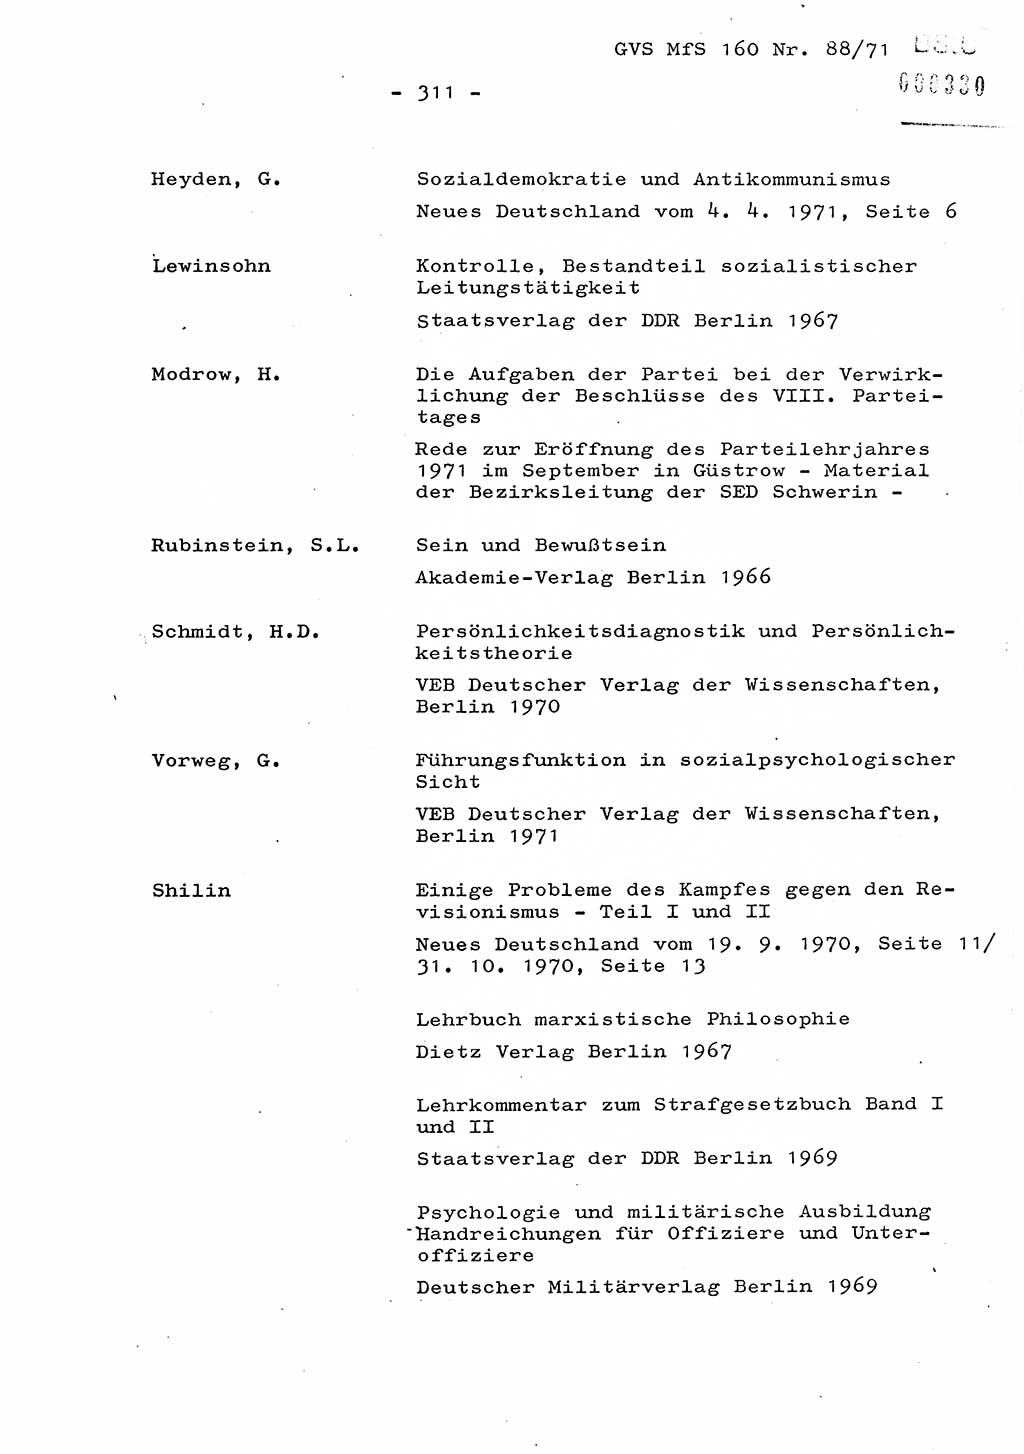 Dissertation Oberstleutnant Josef Schwarz (BV Schwerin), Major Fritz Amm (JHS), Hauptmann Peter Gräßler (JHS), Ministerium für Staatssicherheit (MfS) [Deutsche Demokratische Republik (DDR)], Juristische Hochschule (JHS), Geheime Verschlußsache (GVS) 160-88/71, Potsdam 1972, Seite 311 (Diss. MfS DDR JHS GVS 160-88/71 1972, S. 311)